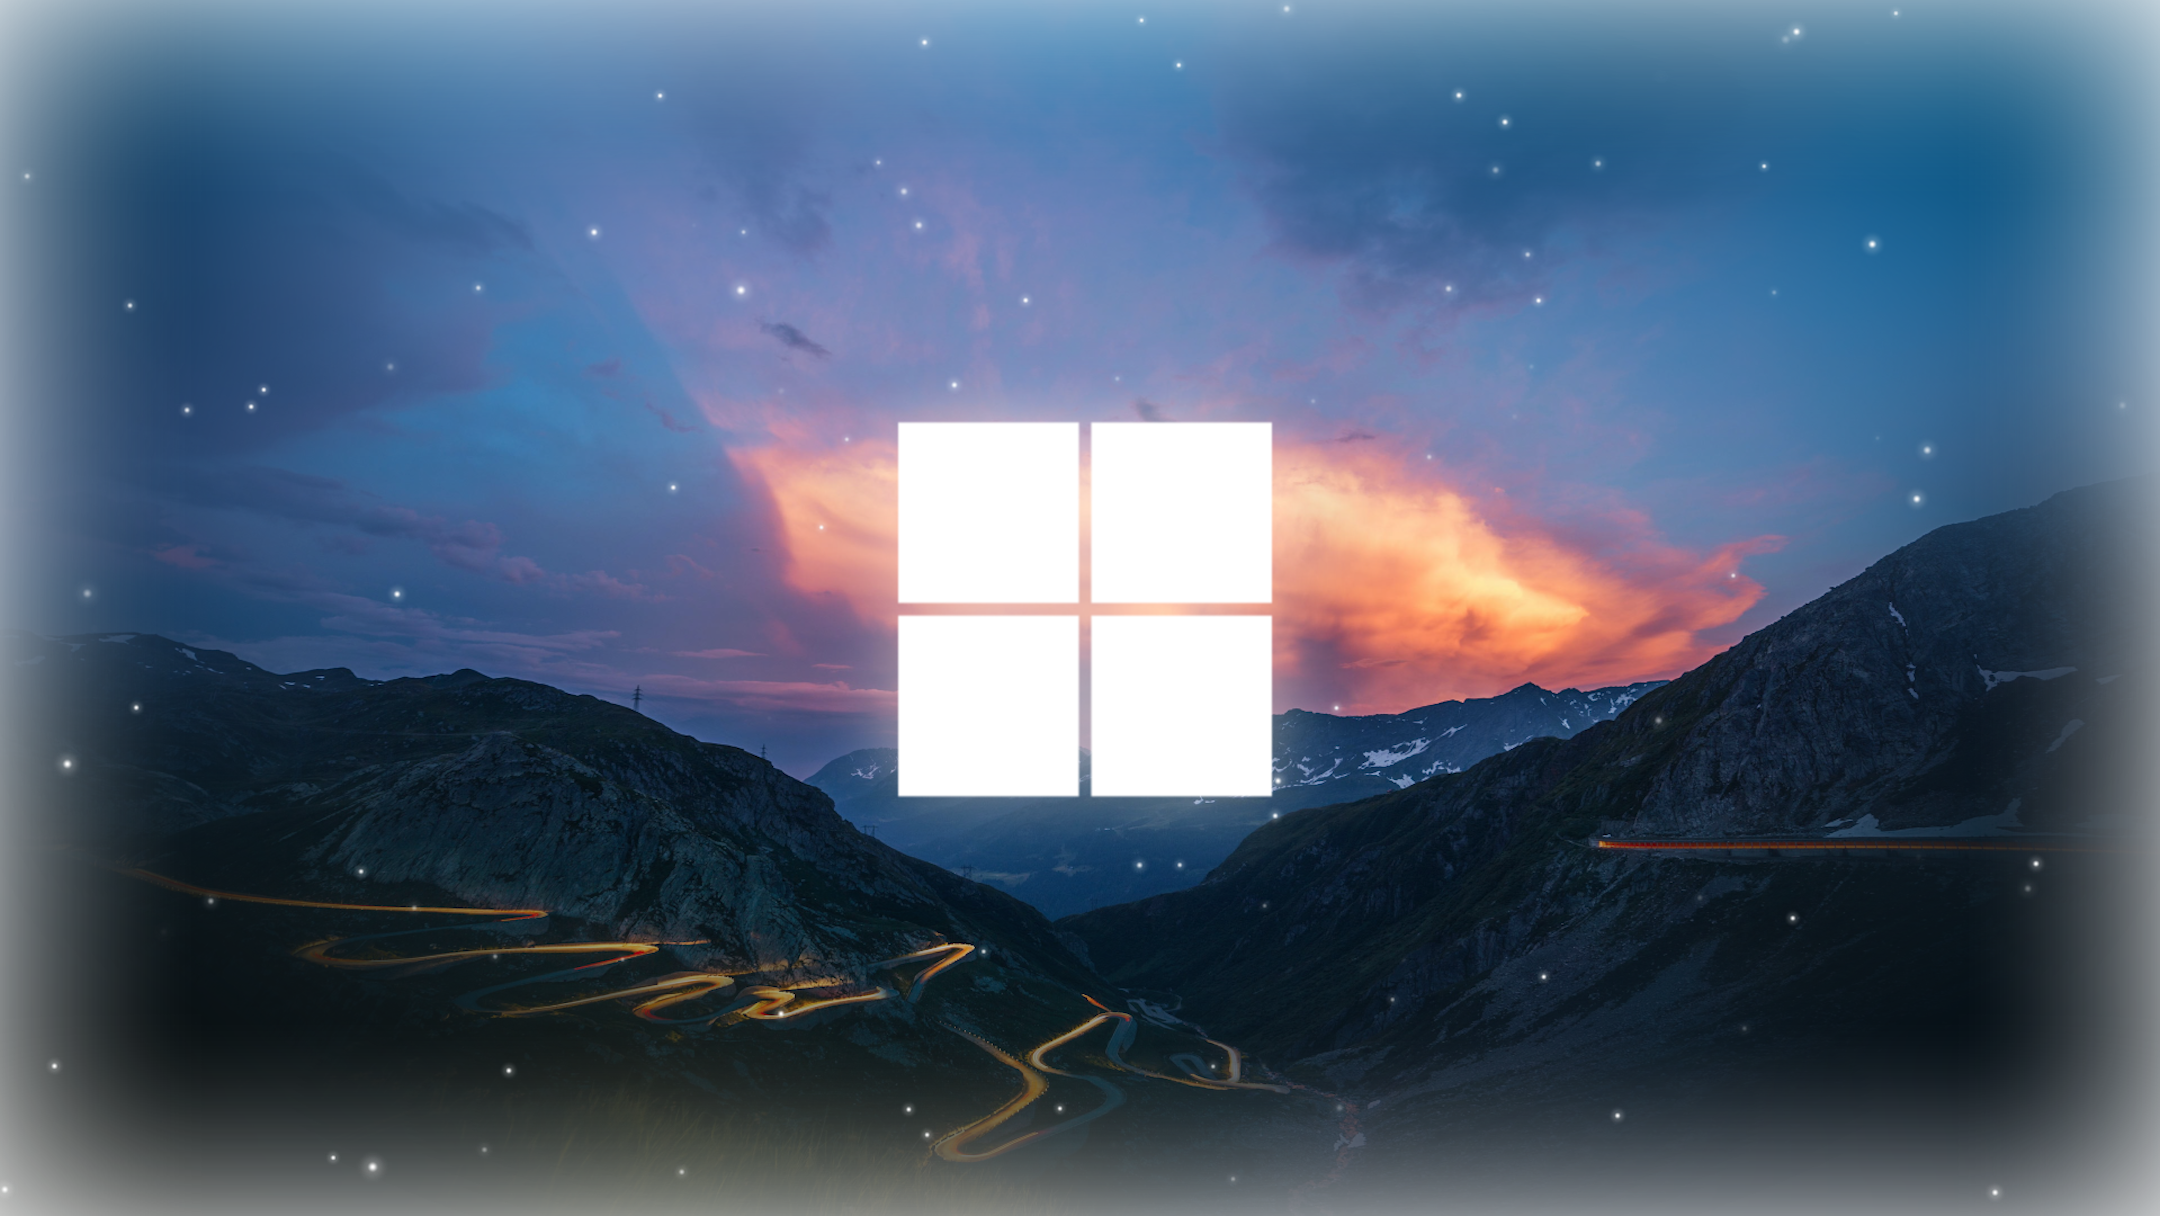 Hình nền Win 11, Xịn sò: Với hình nền Win 11 xịn sò, bạn sẽ trang trí màn hình máy tính của mình với những hình ảnh ấn tượng và độc đáo. Tận hưởng thiết kế tối ưu hóa hiệu suất và tính tương thích của Windows 11 và biến máy tính của bạn thành một nơi làm việc đẹp mắt và tiện lợi.